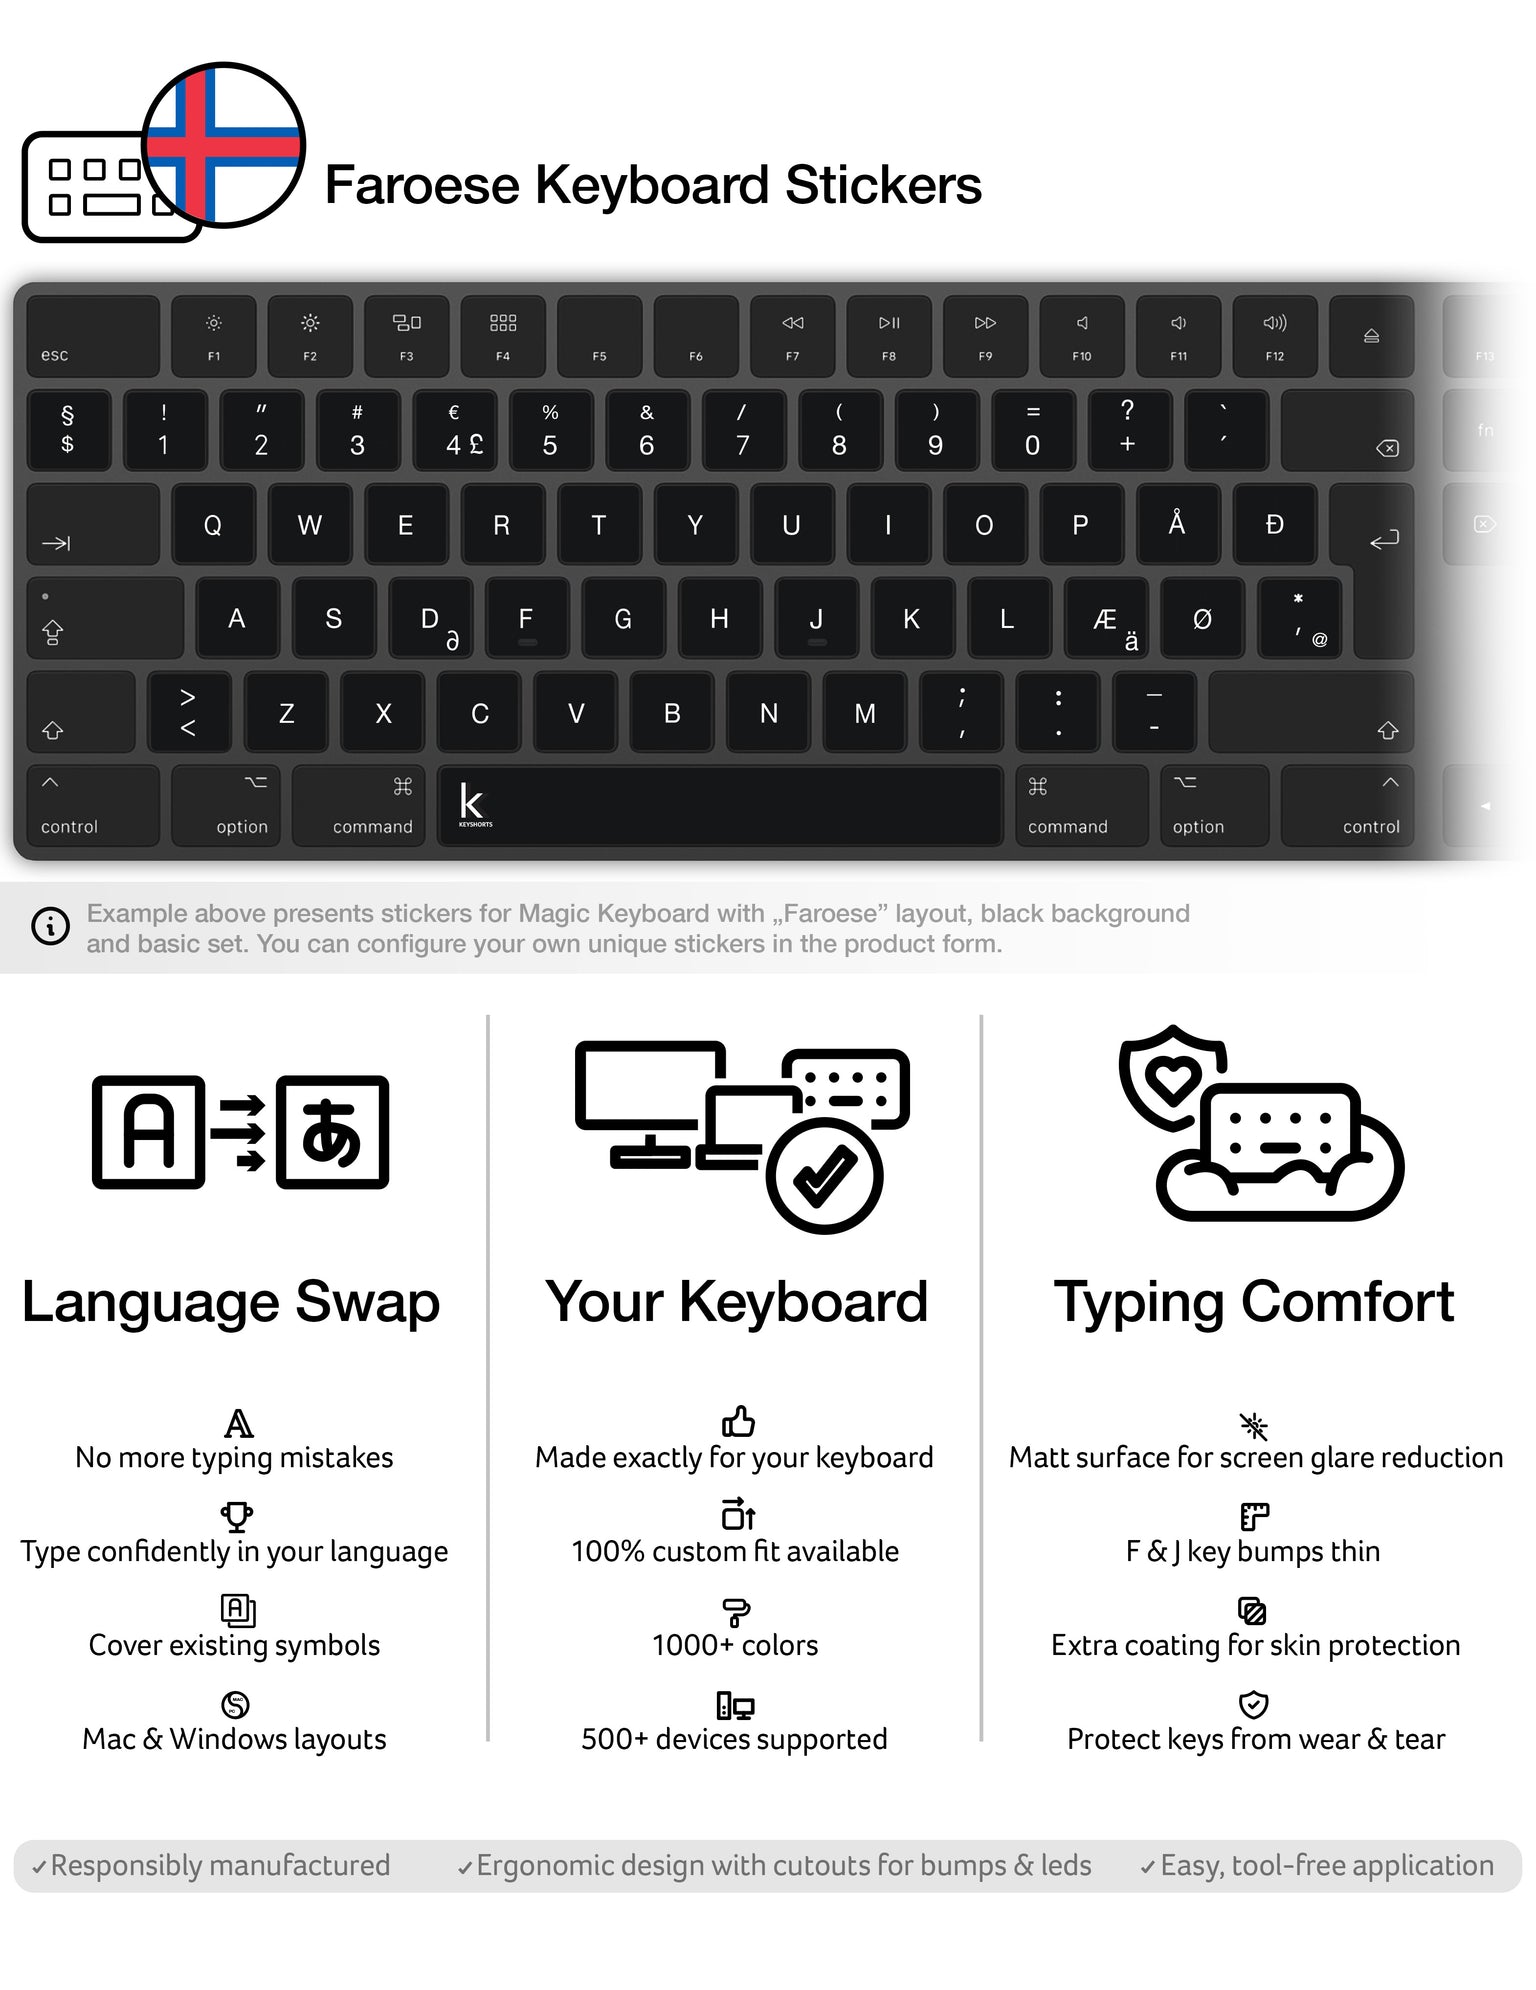 Faroese Keyboard Stickers